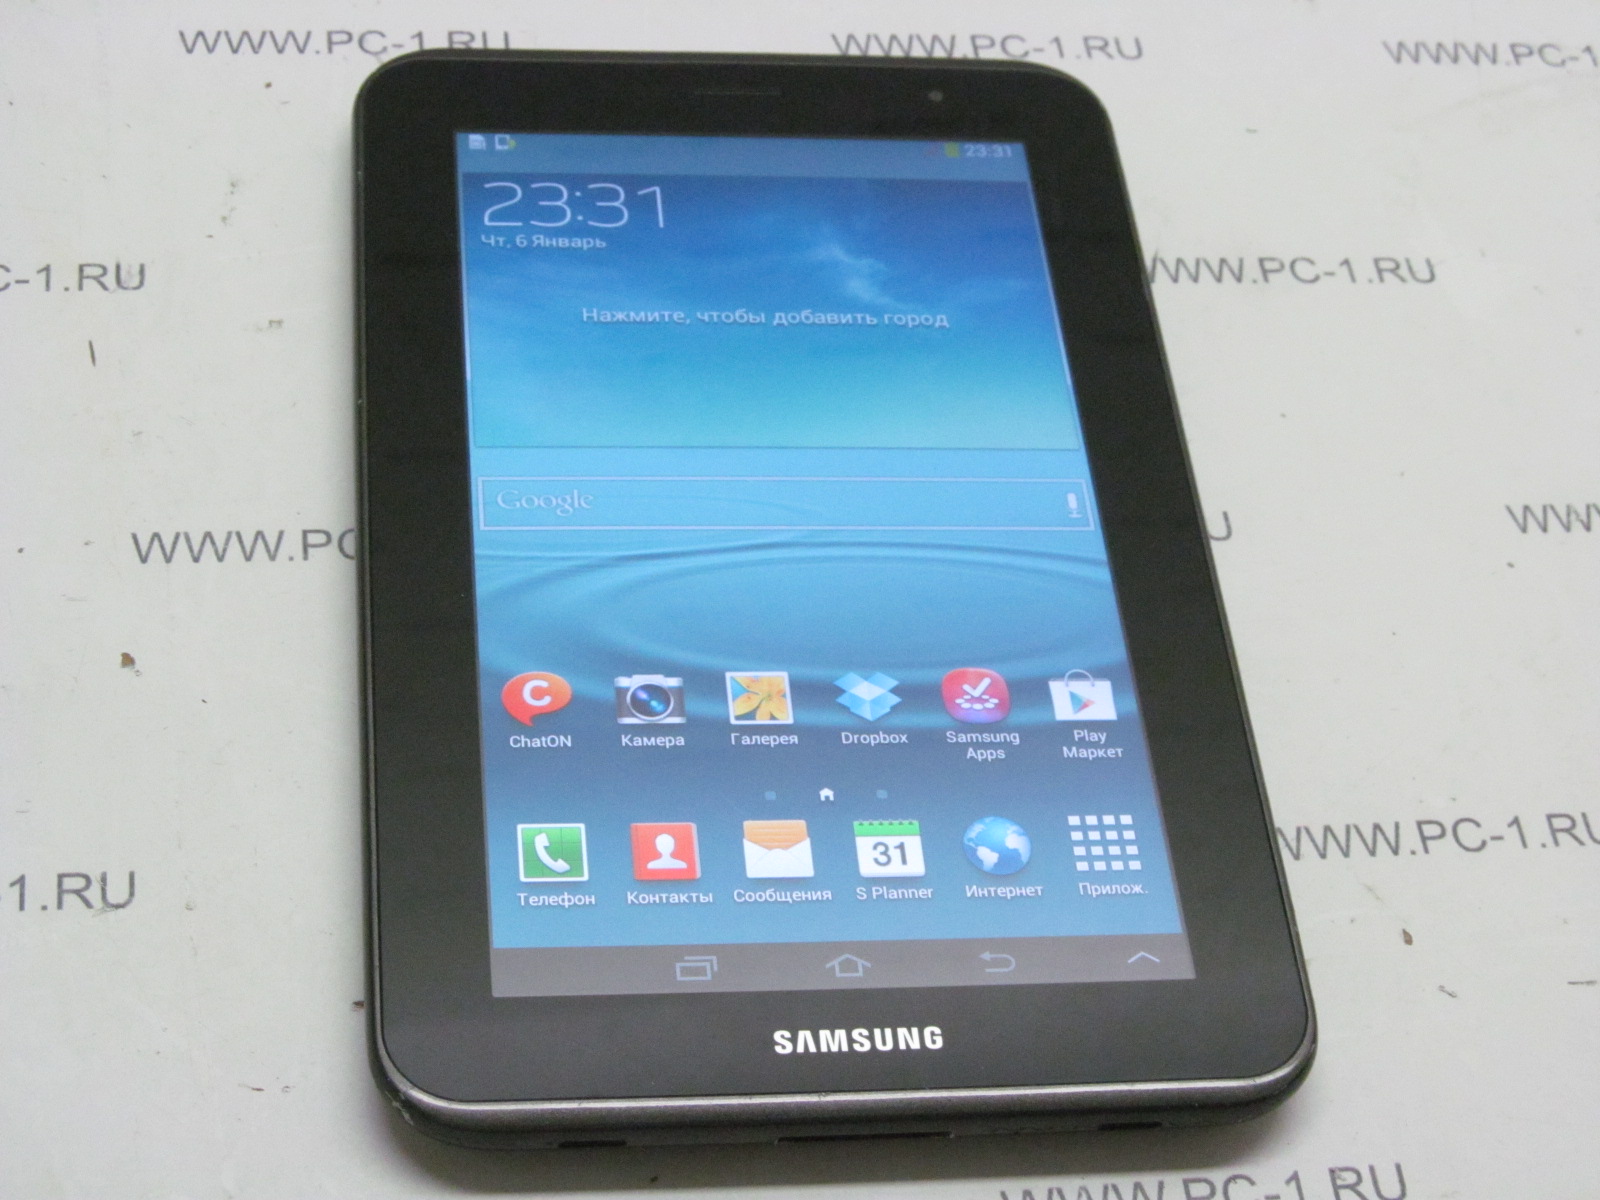 Samsung P3100 Galaxy Tab 7.0